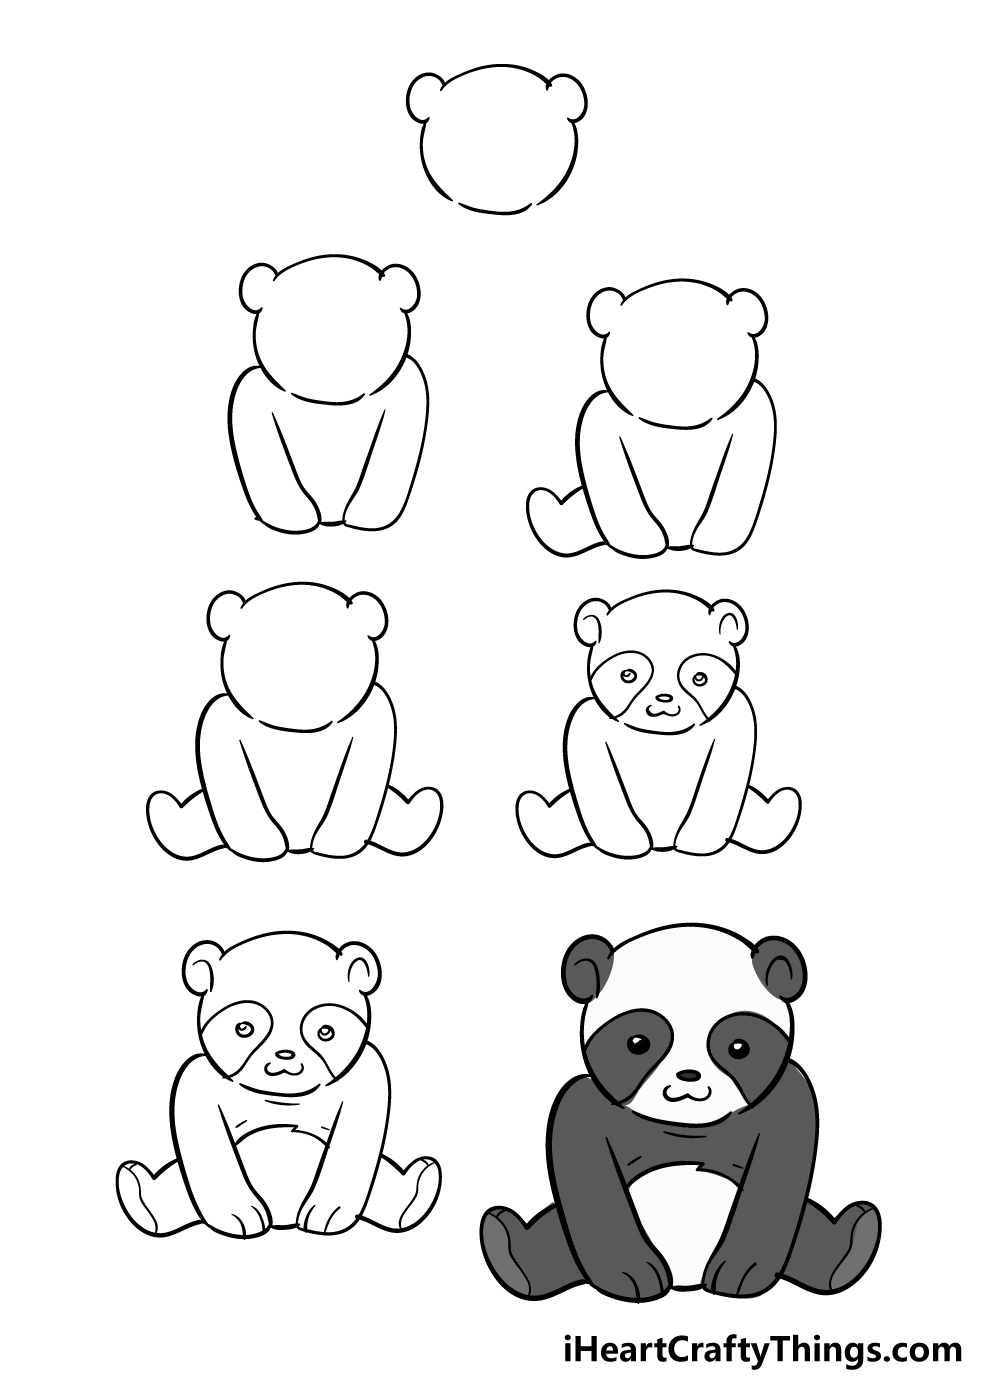 Panda in 7 steps - Hướng dẫn chi tiết cách vẽ con gấu trúc cute dễ thương với 7 bước đơn giản